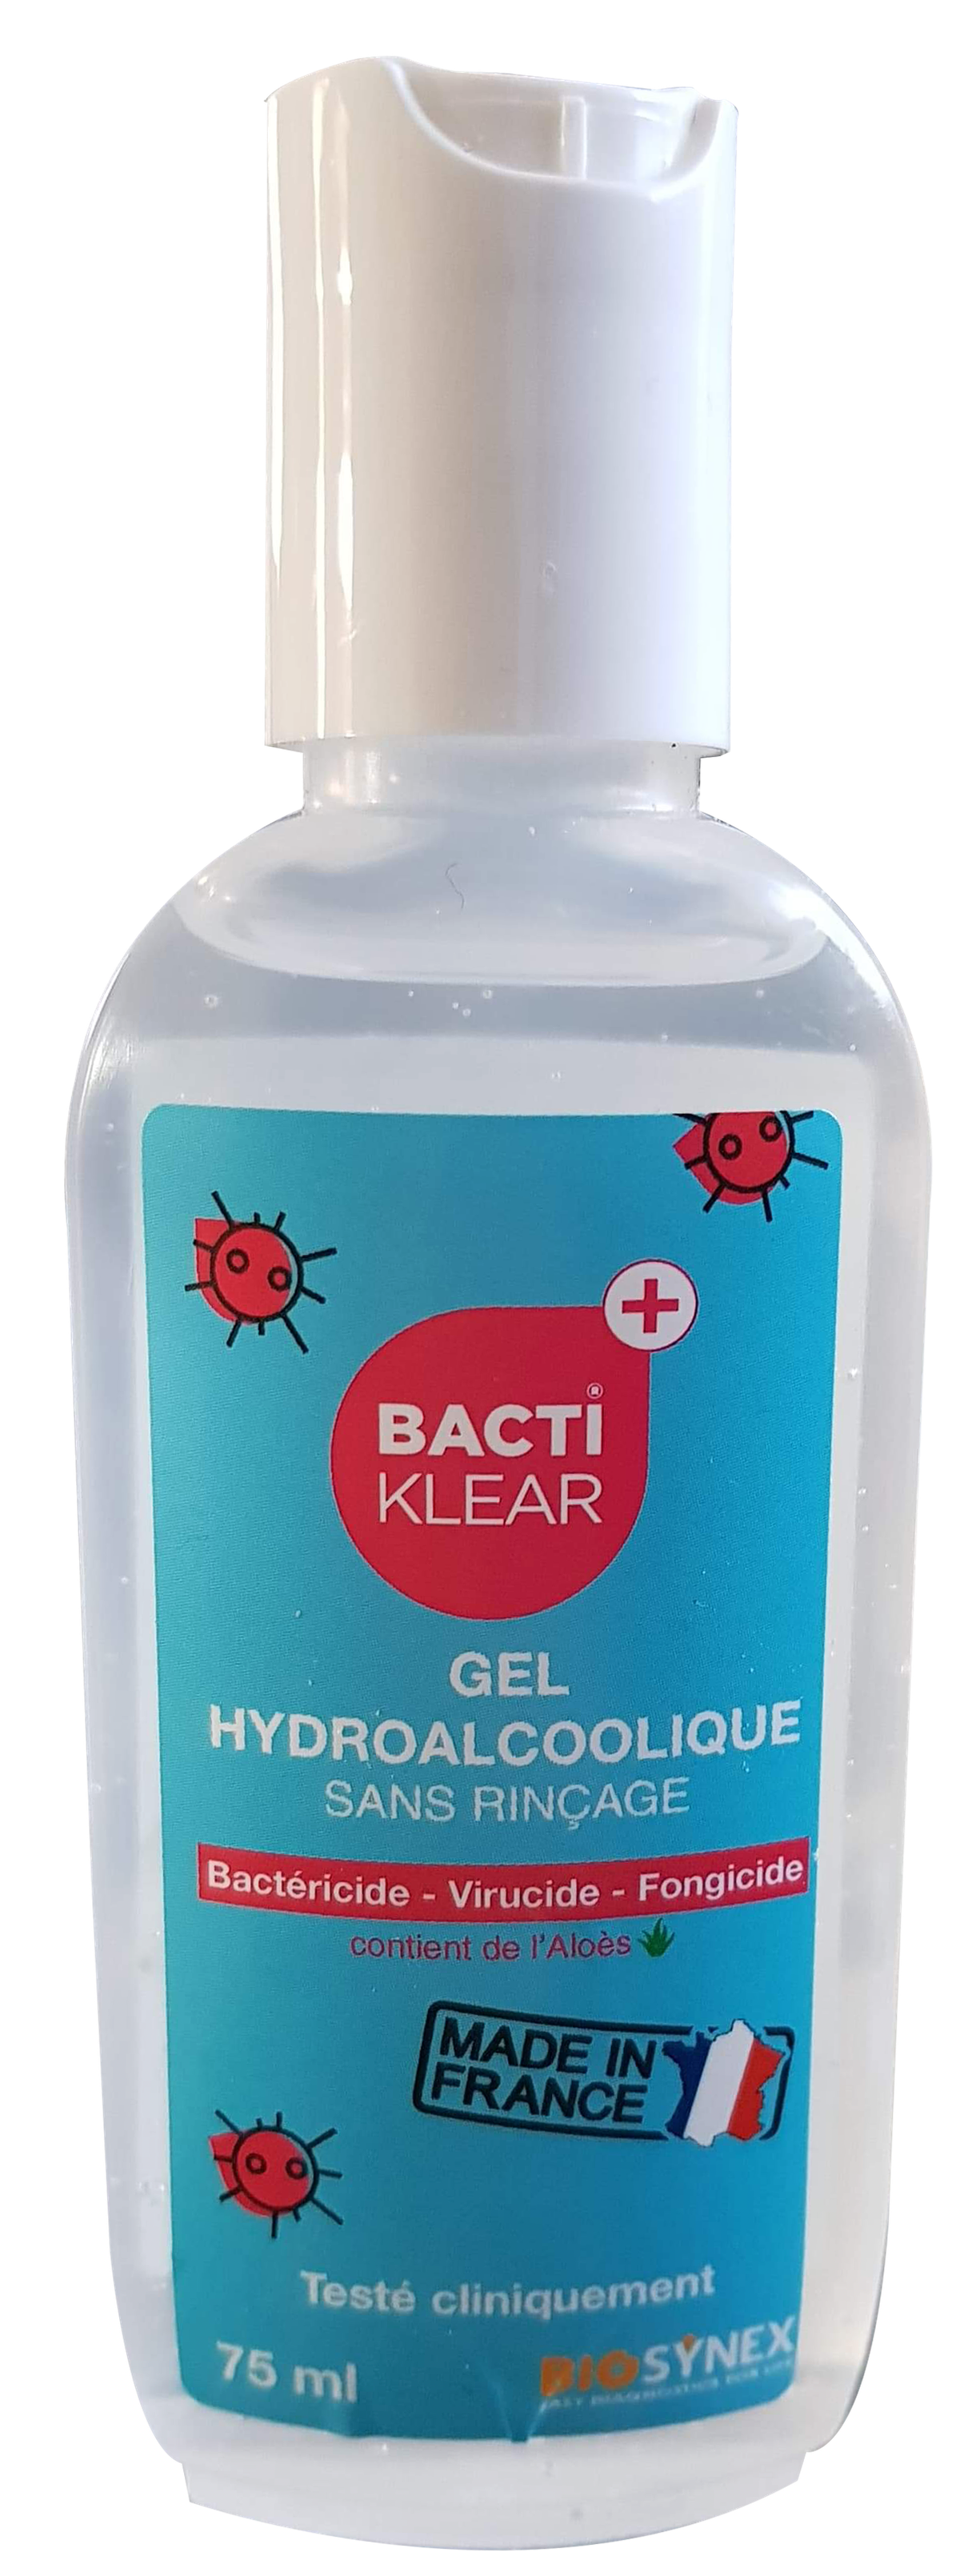 Bactiklear Gel Hydroalcoolique 75ml